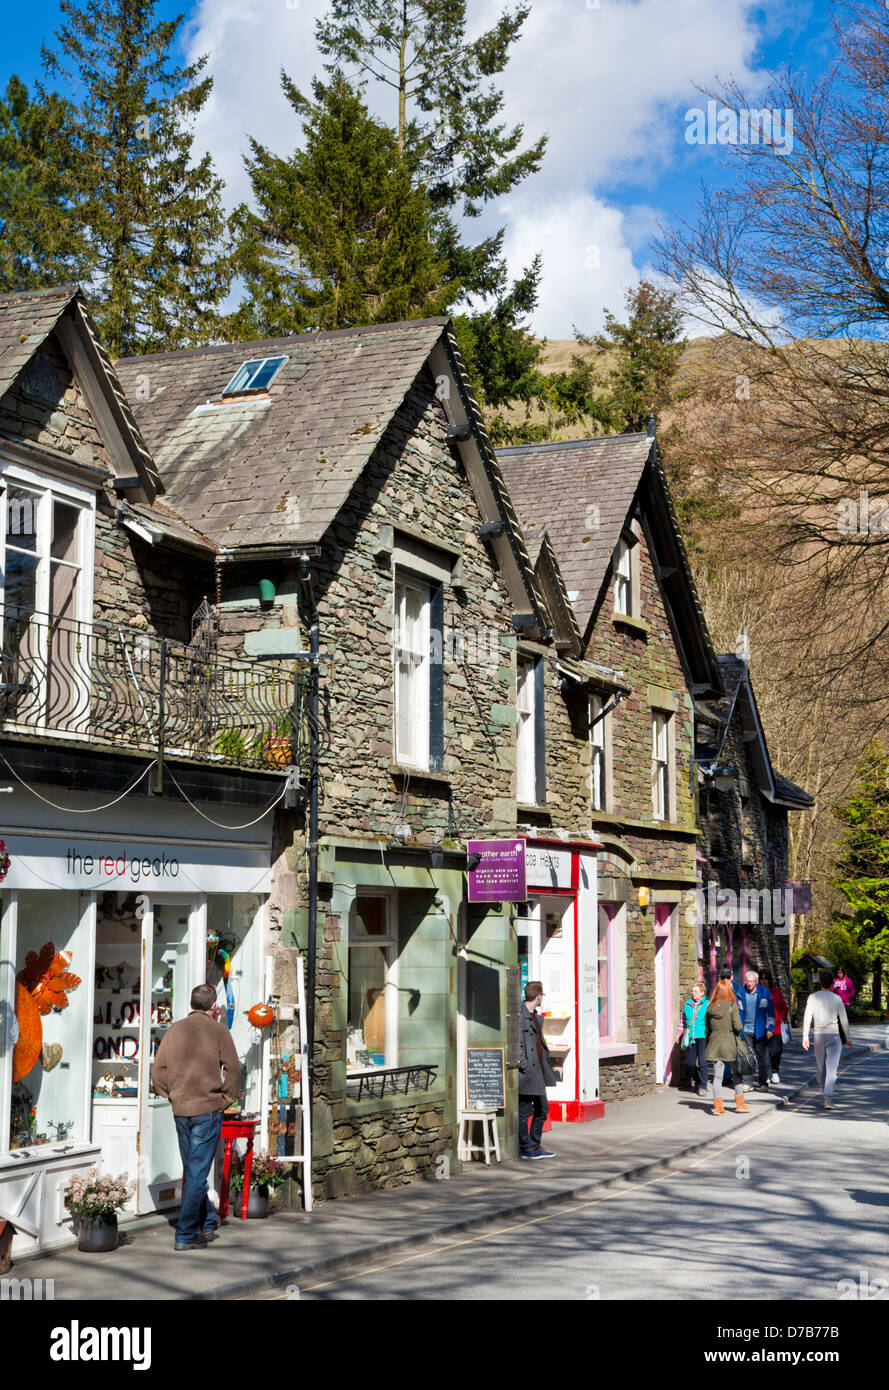 Des touristes se promènent dans Grasmere Village avec magasins et cafés Cumbria Lake District Angleterre UK GB EU Europe Banque D'Images